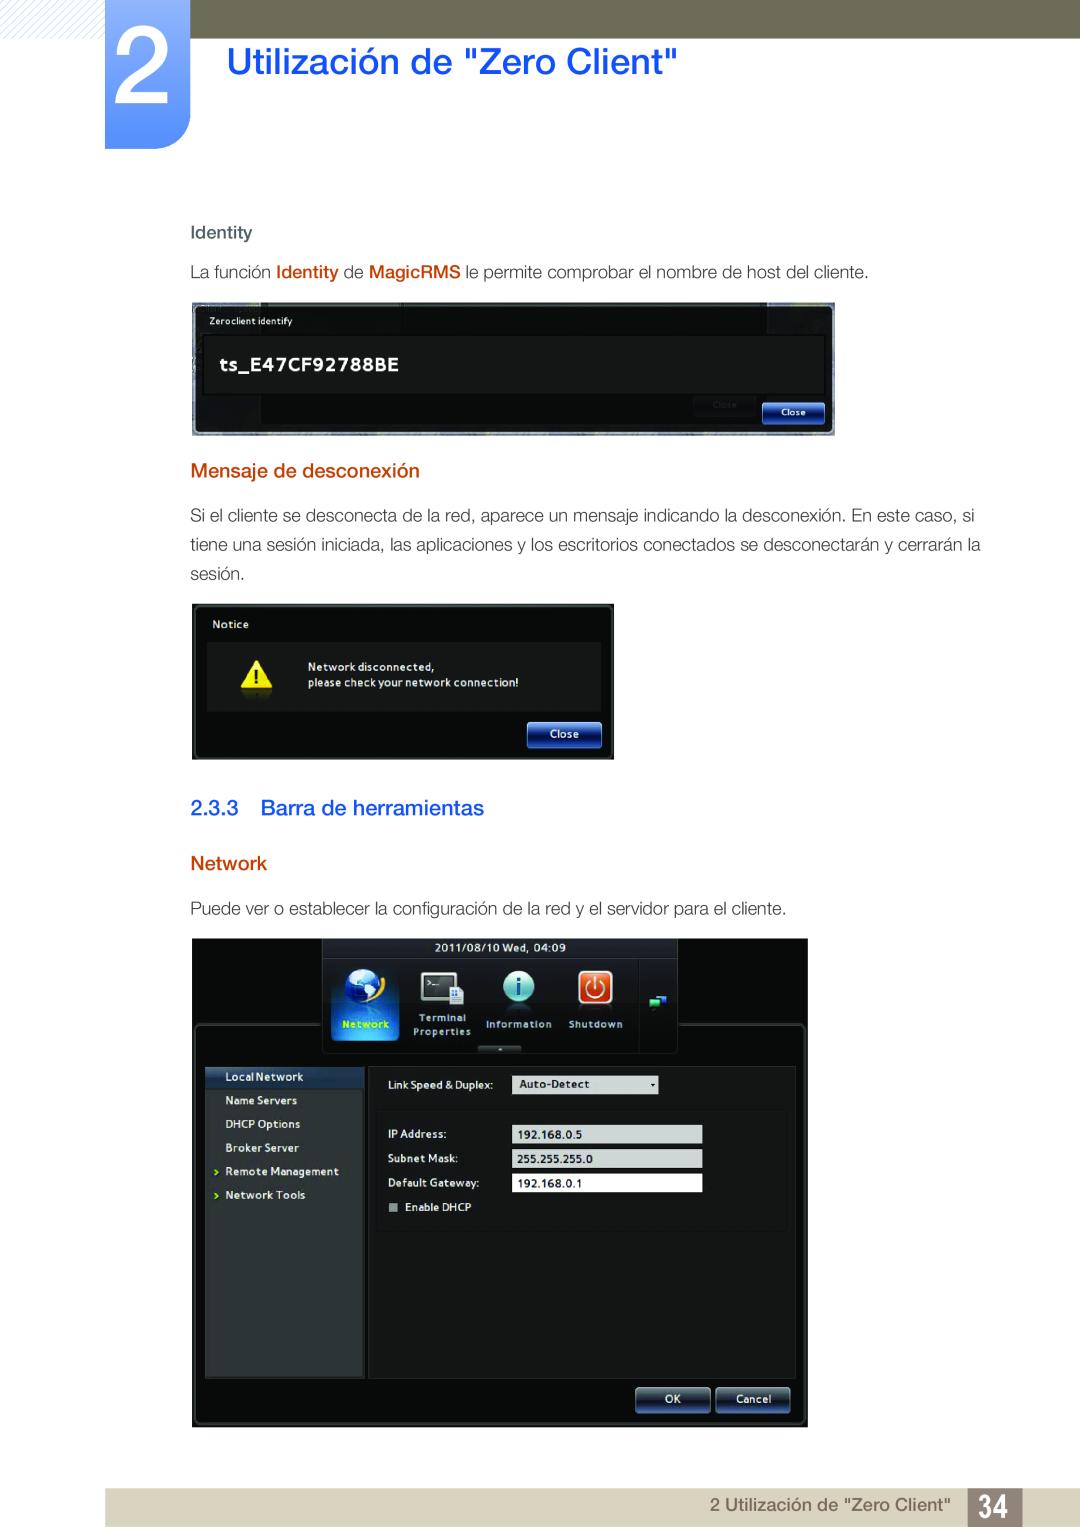 Samsung LF24TSCTBAN/EN manual Barra de herramientas, Utilización de Zero Client, Mensaje de desconexión, Network, Identity 